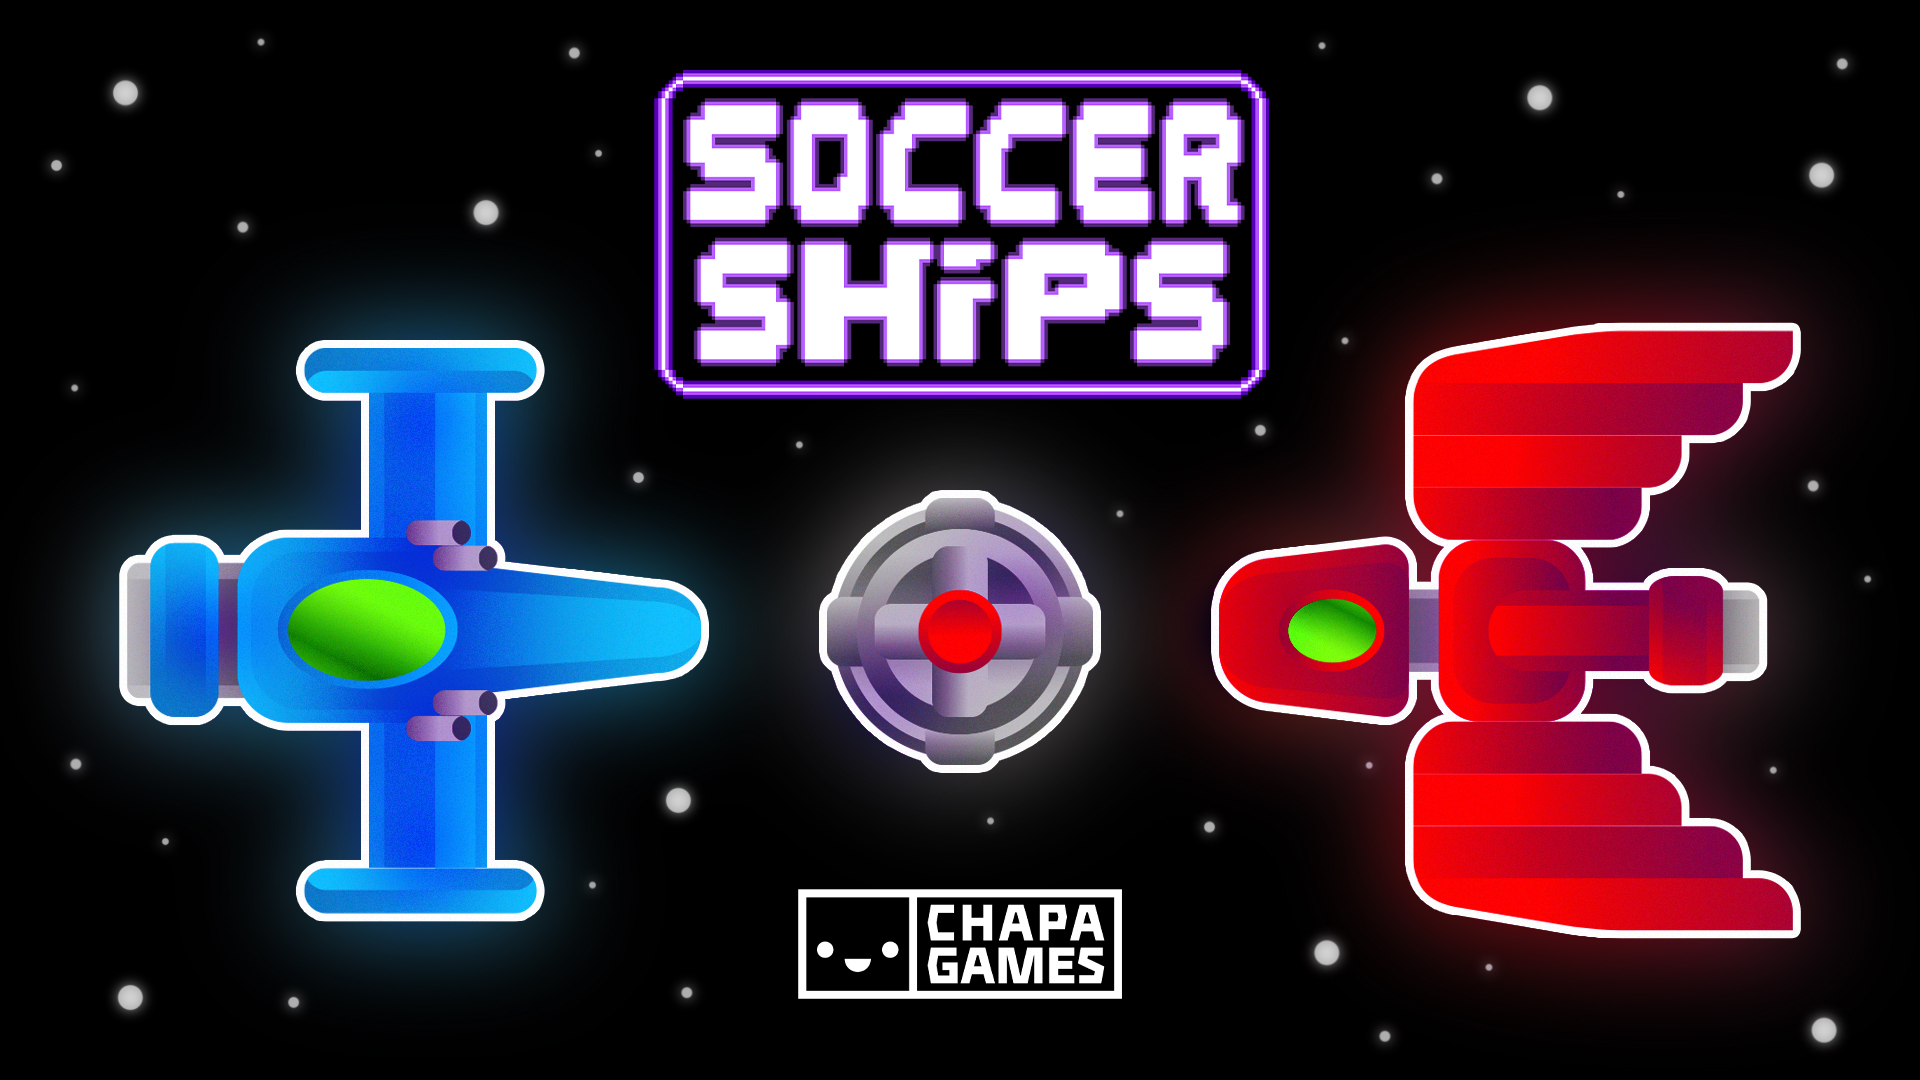 Soccer Ships